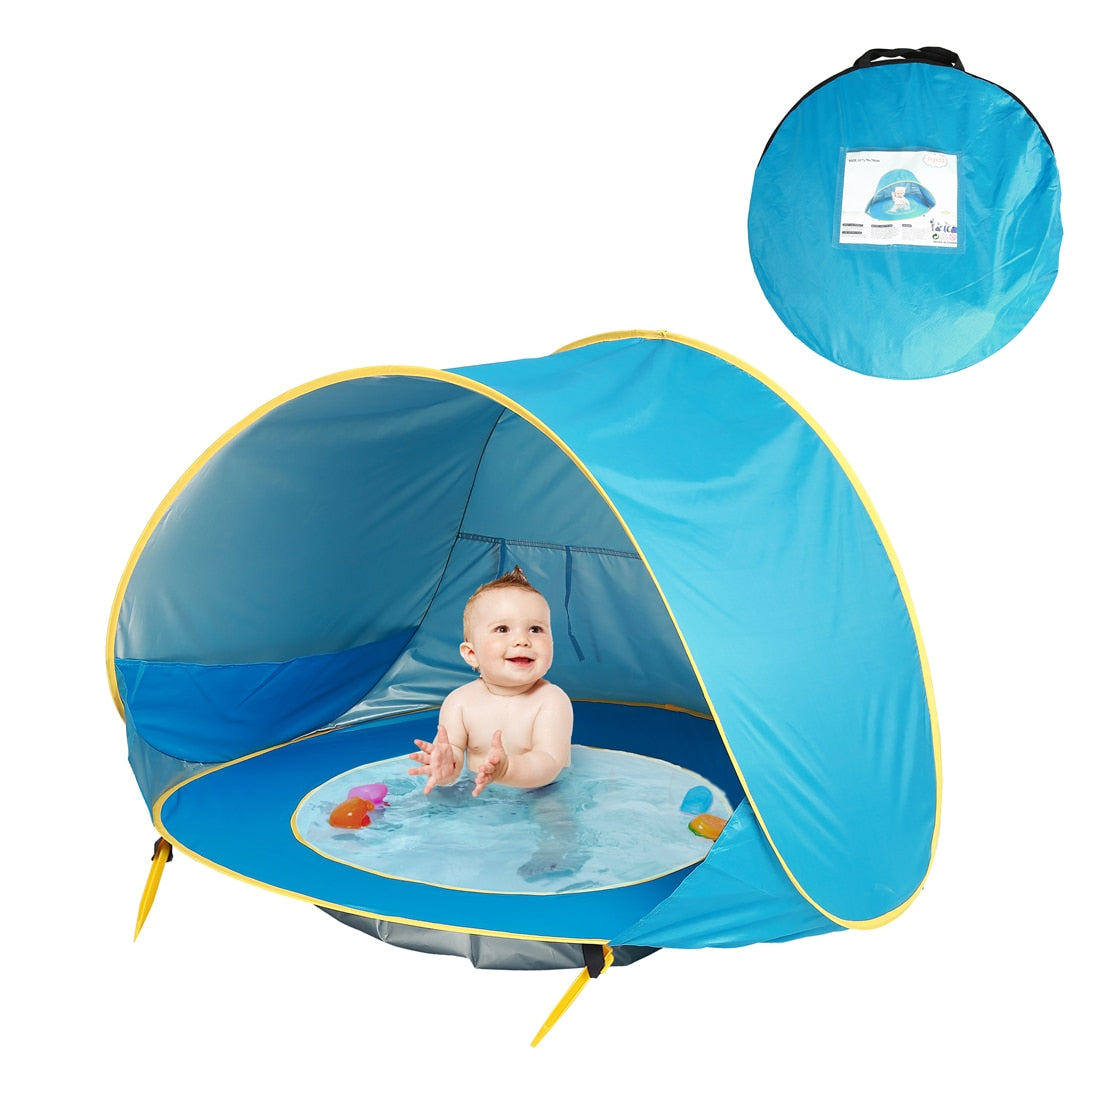 Tente de Plage Pliable pour enfants Bleu - Mon Adorable Bébé